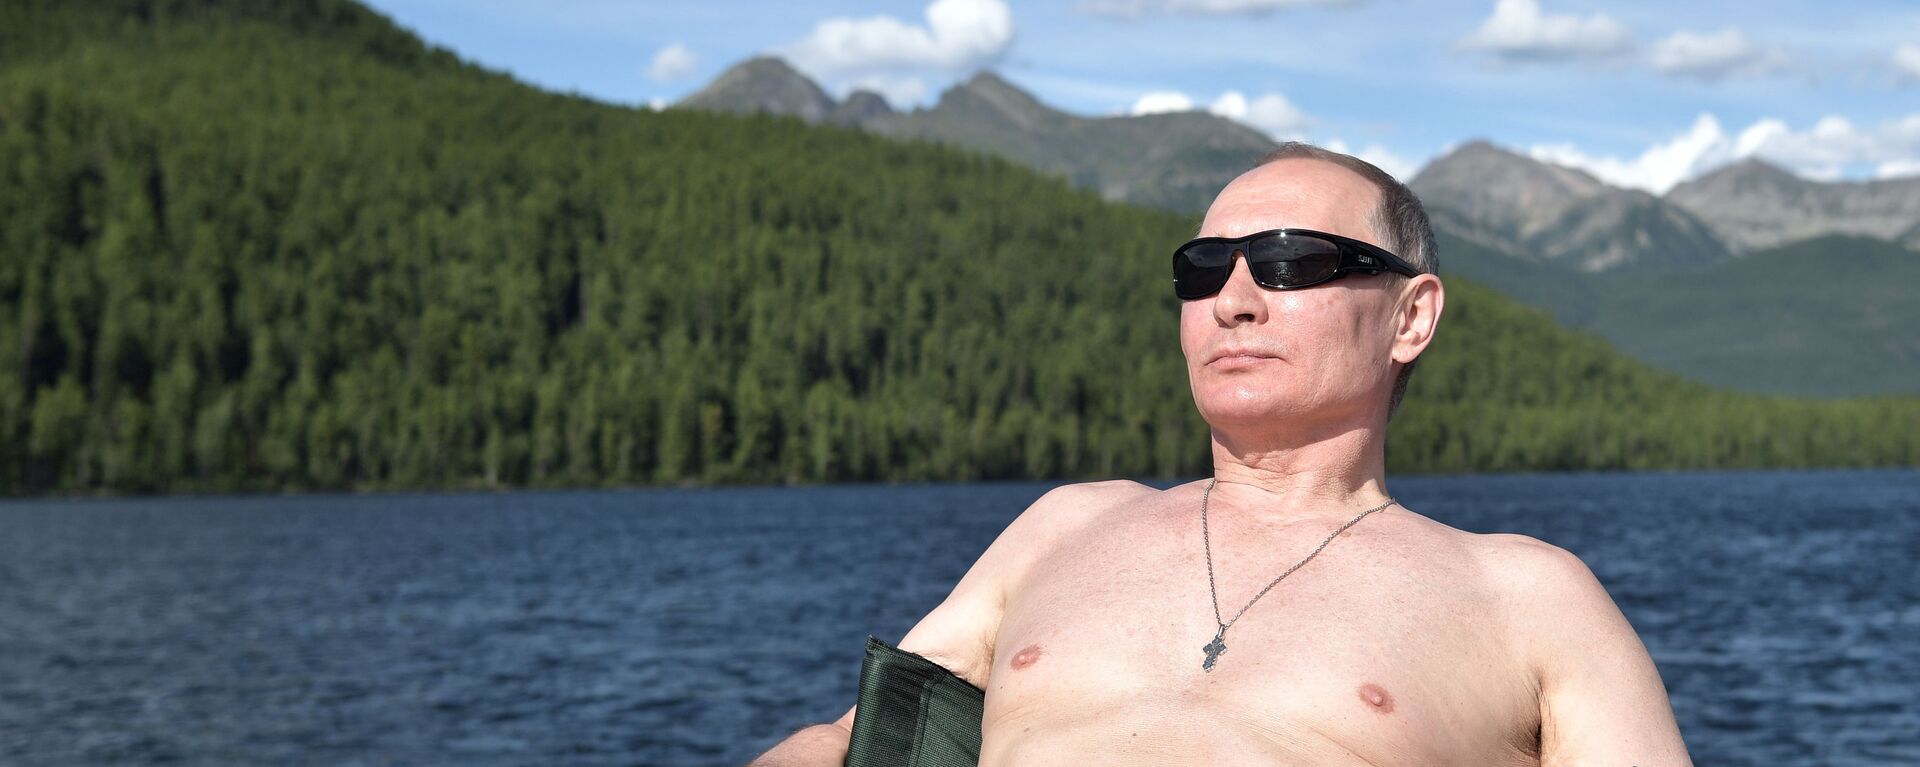 Predsednik Rusije Vladimir Putin sunča se na jezeru u Republici Tiva - Sputnik Srbija, 1920, 05.08.2017